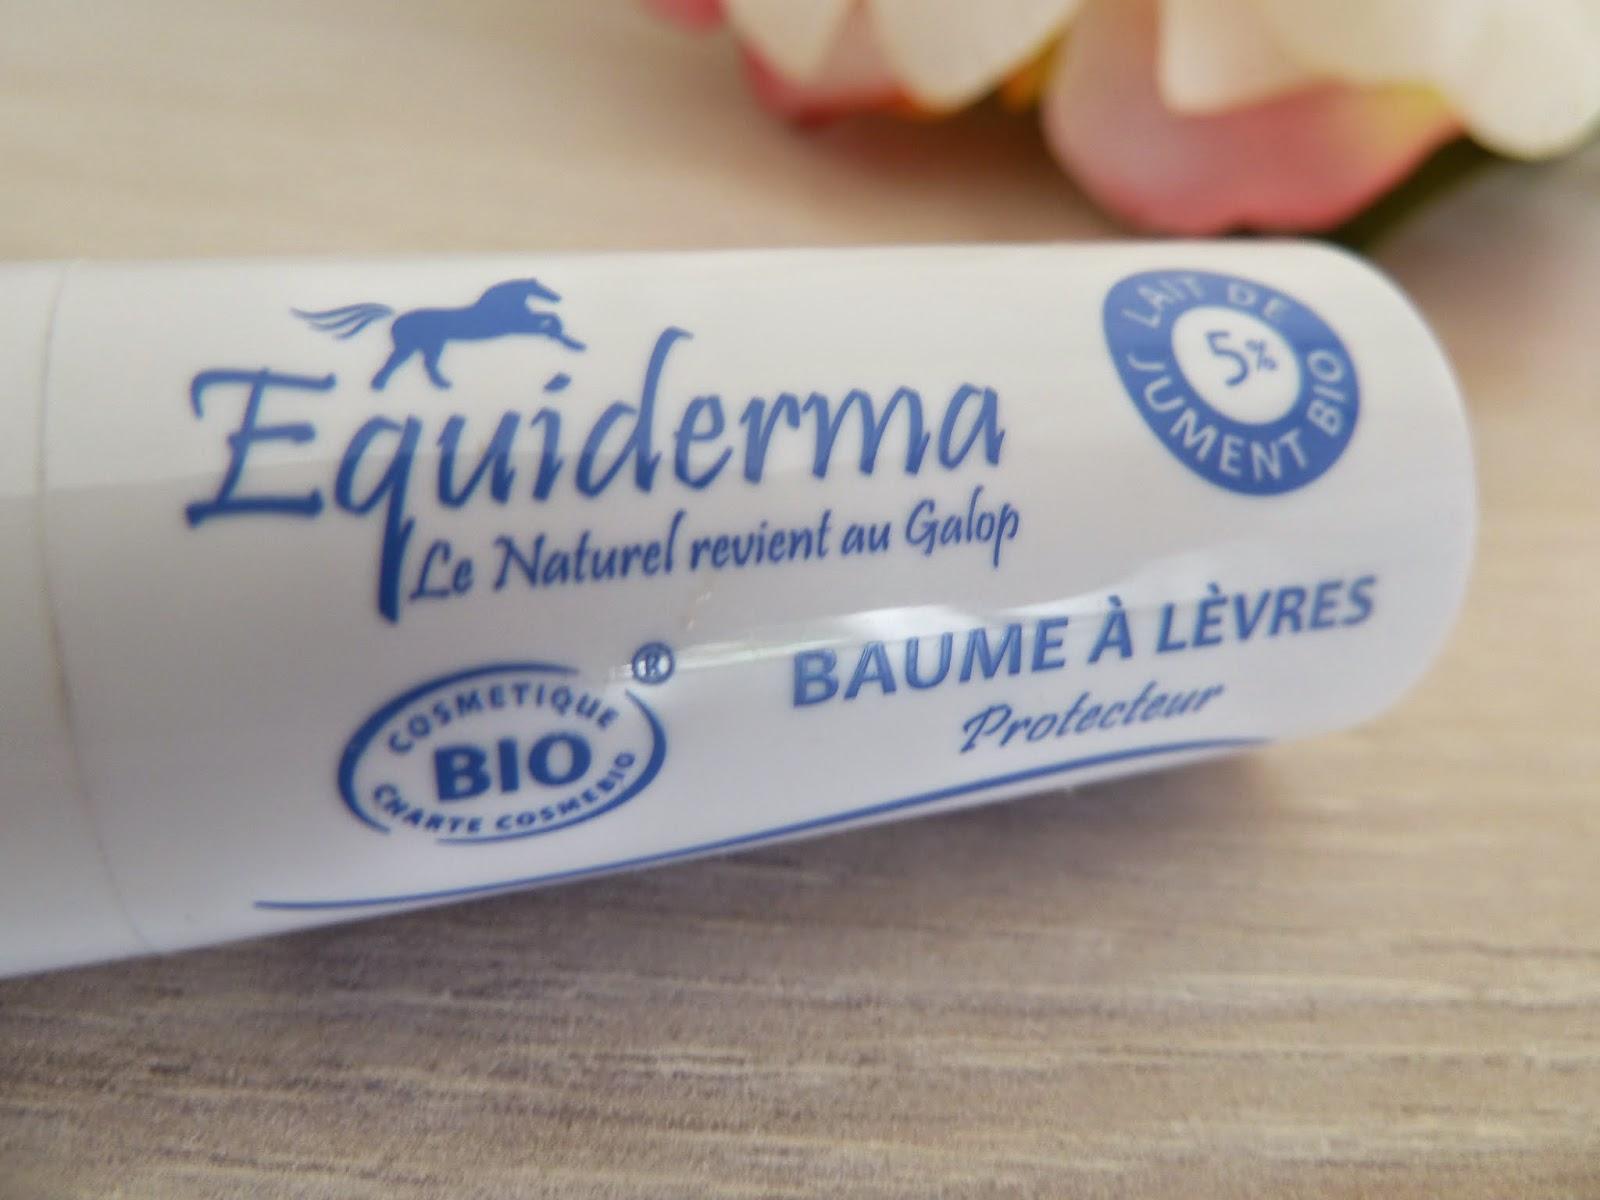 Baume à lèvres protecteur d'Equiderma : Quand le naturel revient au galop...